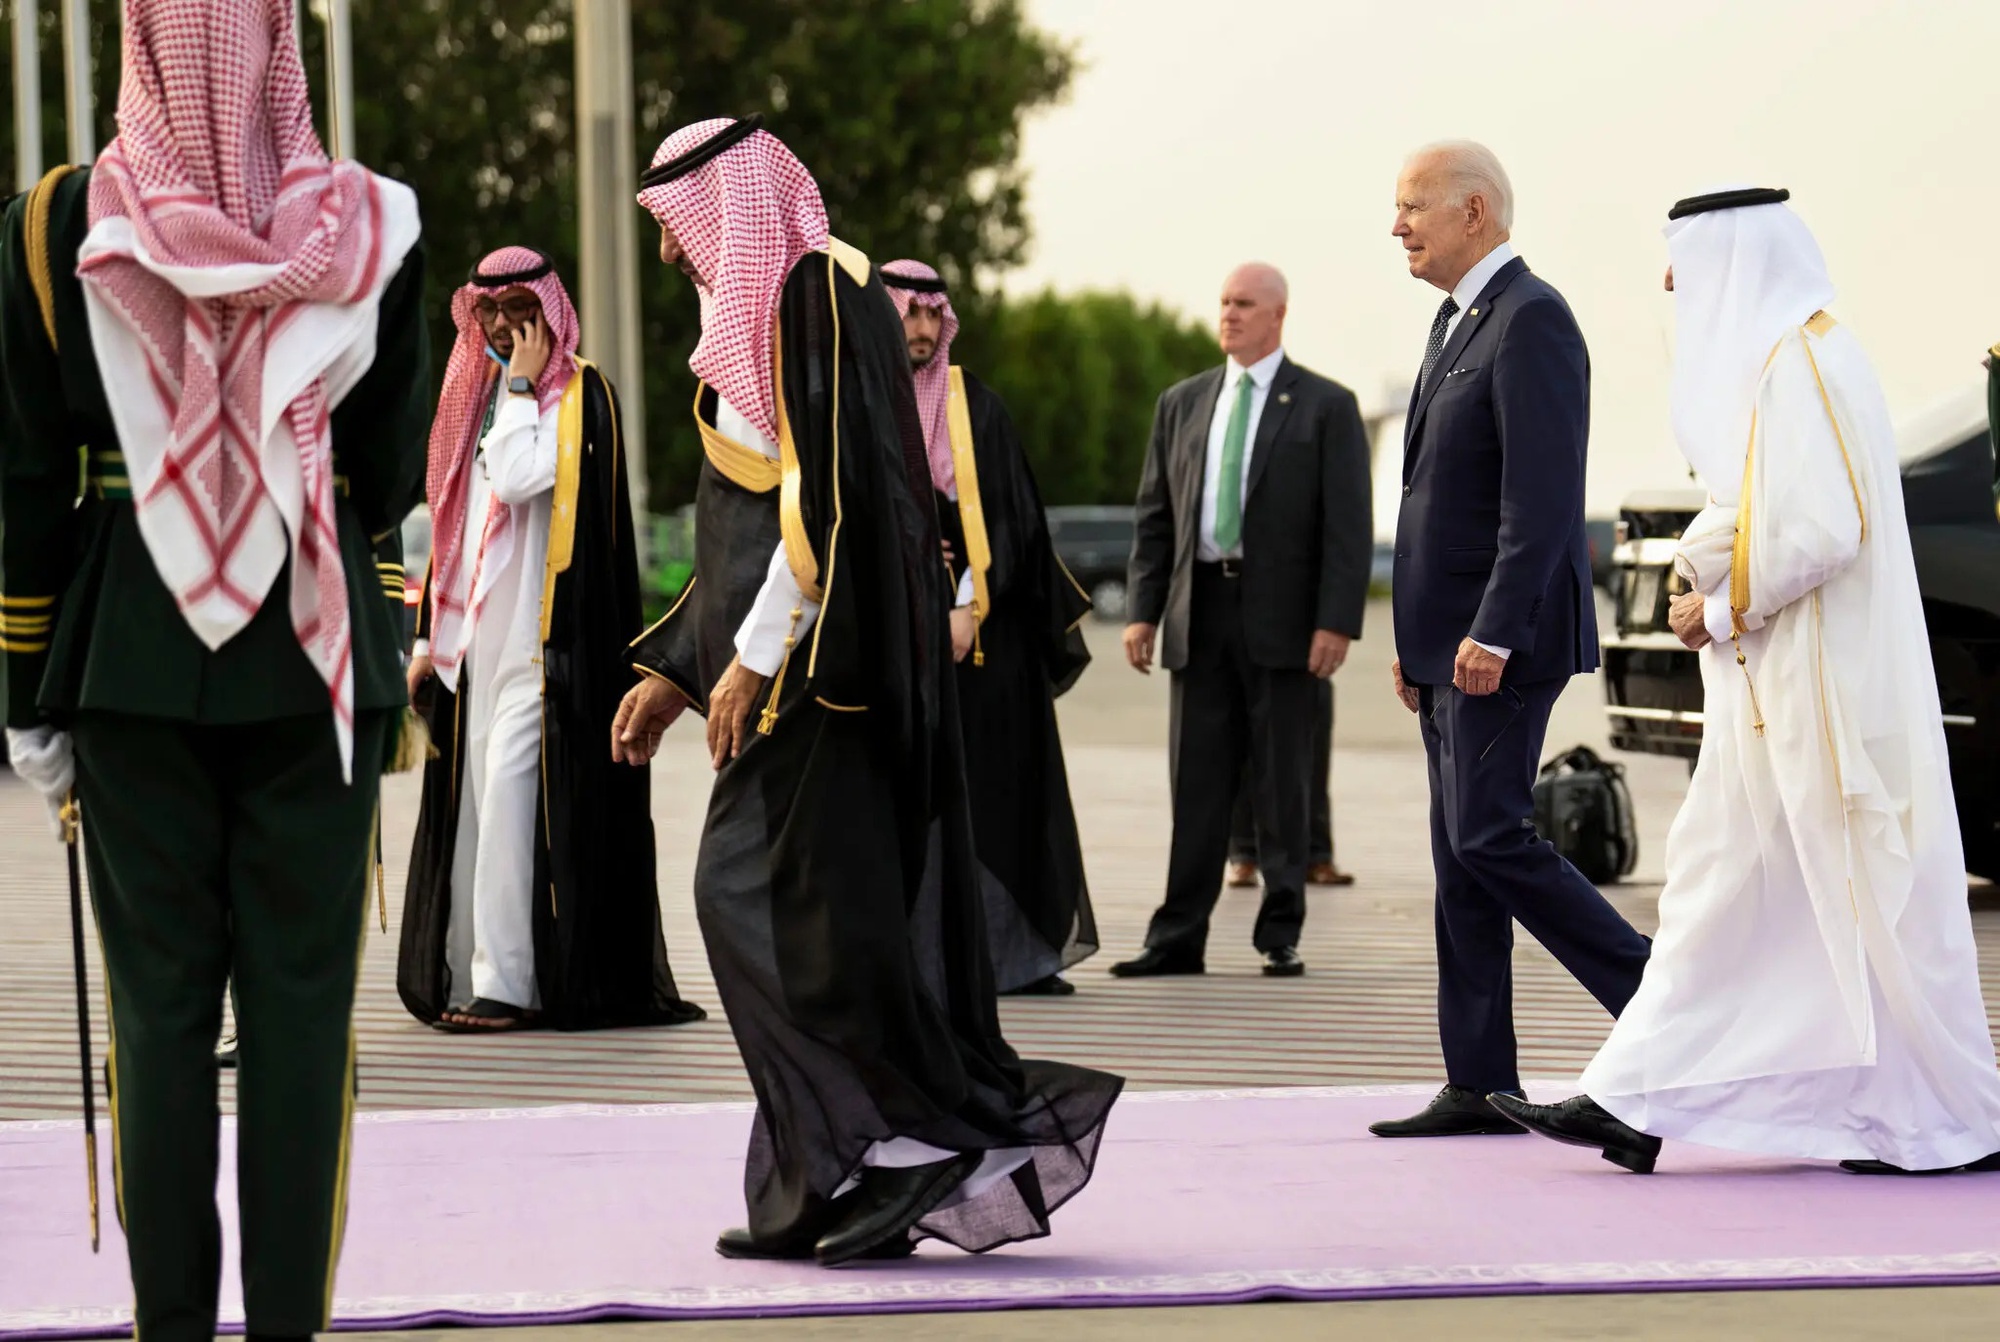 Tranh cãi xung quanh thỏa thuận bí mật giữa Mỹ và Saudi Arabia - Ảnh 2.